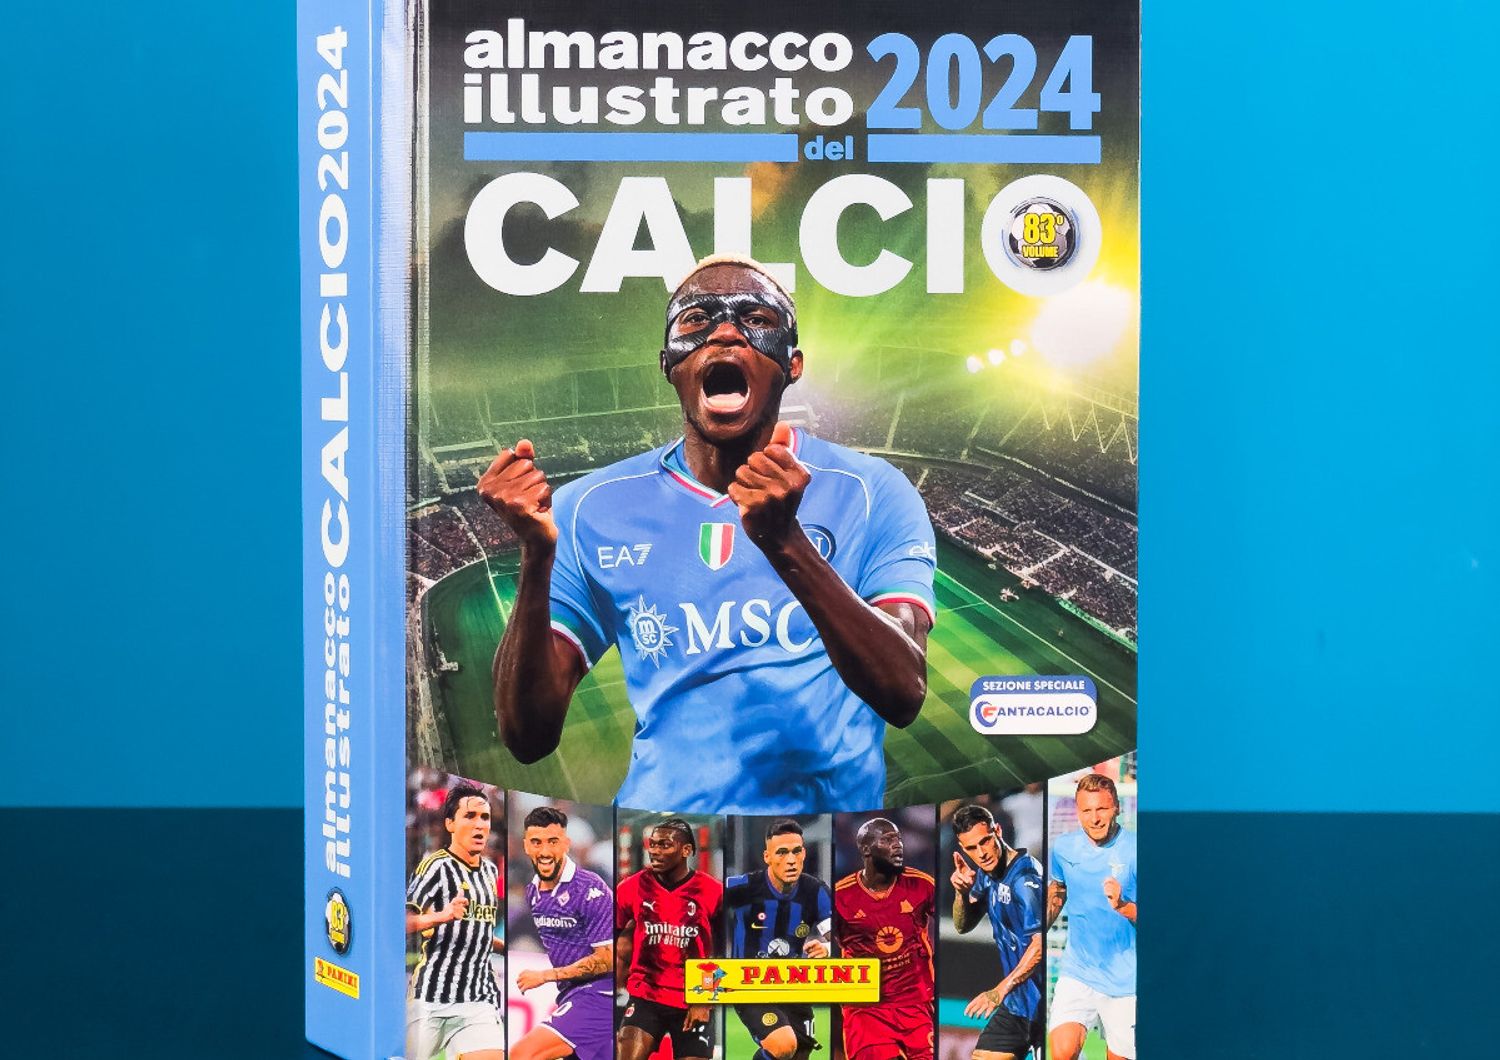 &nbsp;Almanacco del calcio 2024